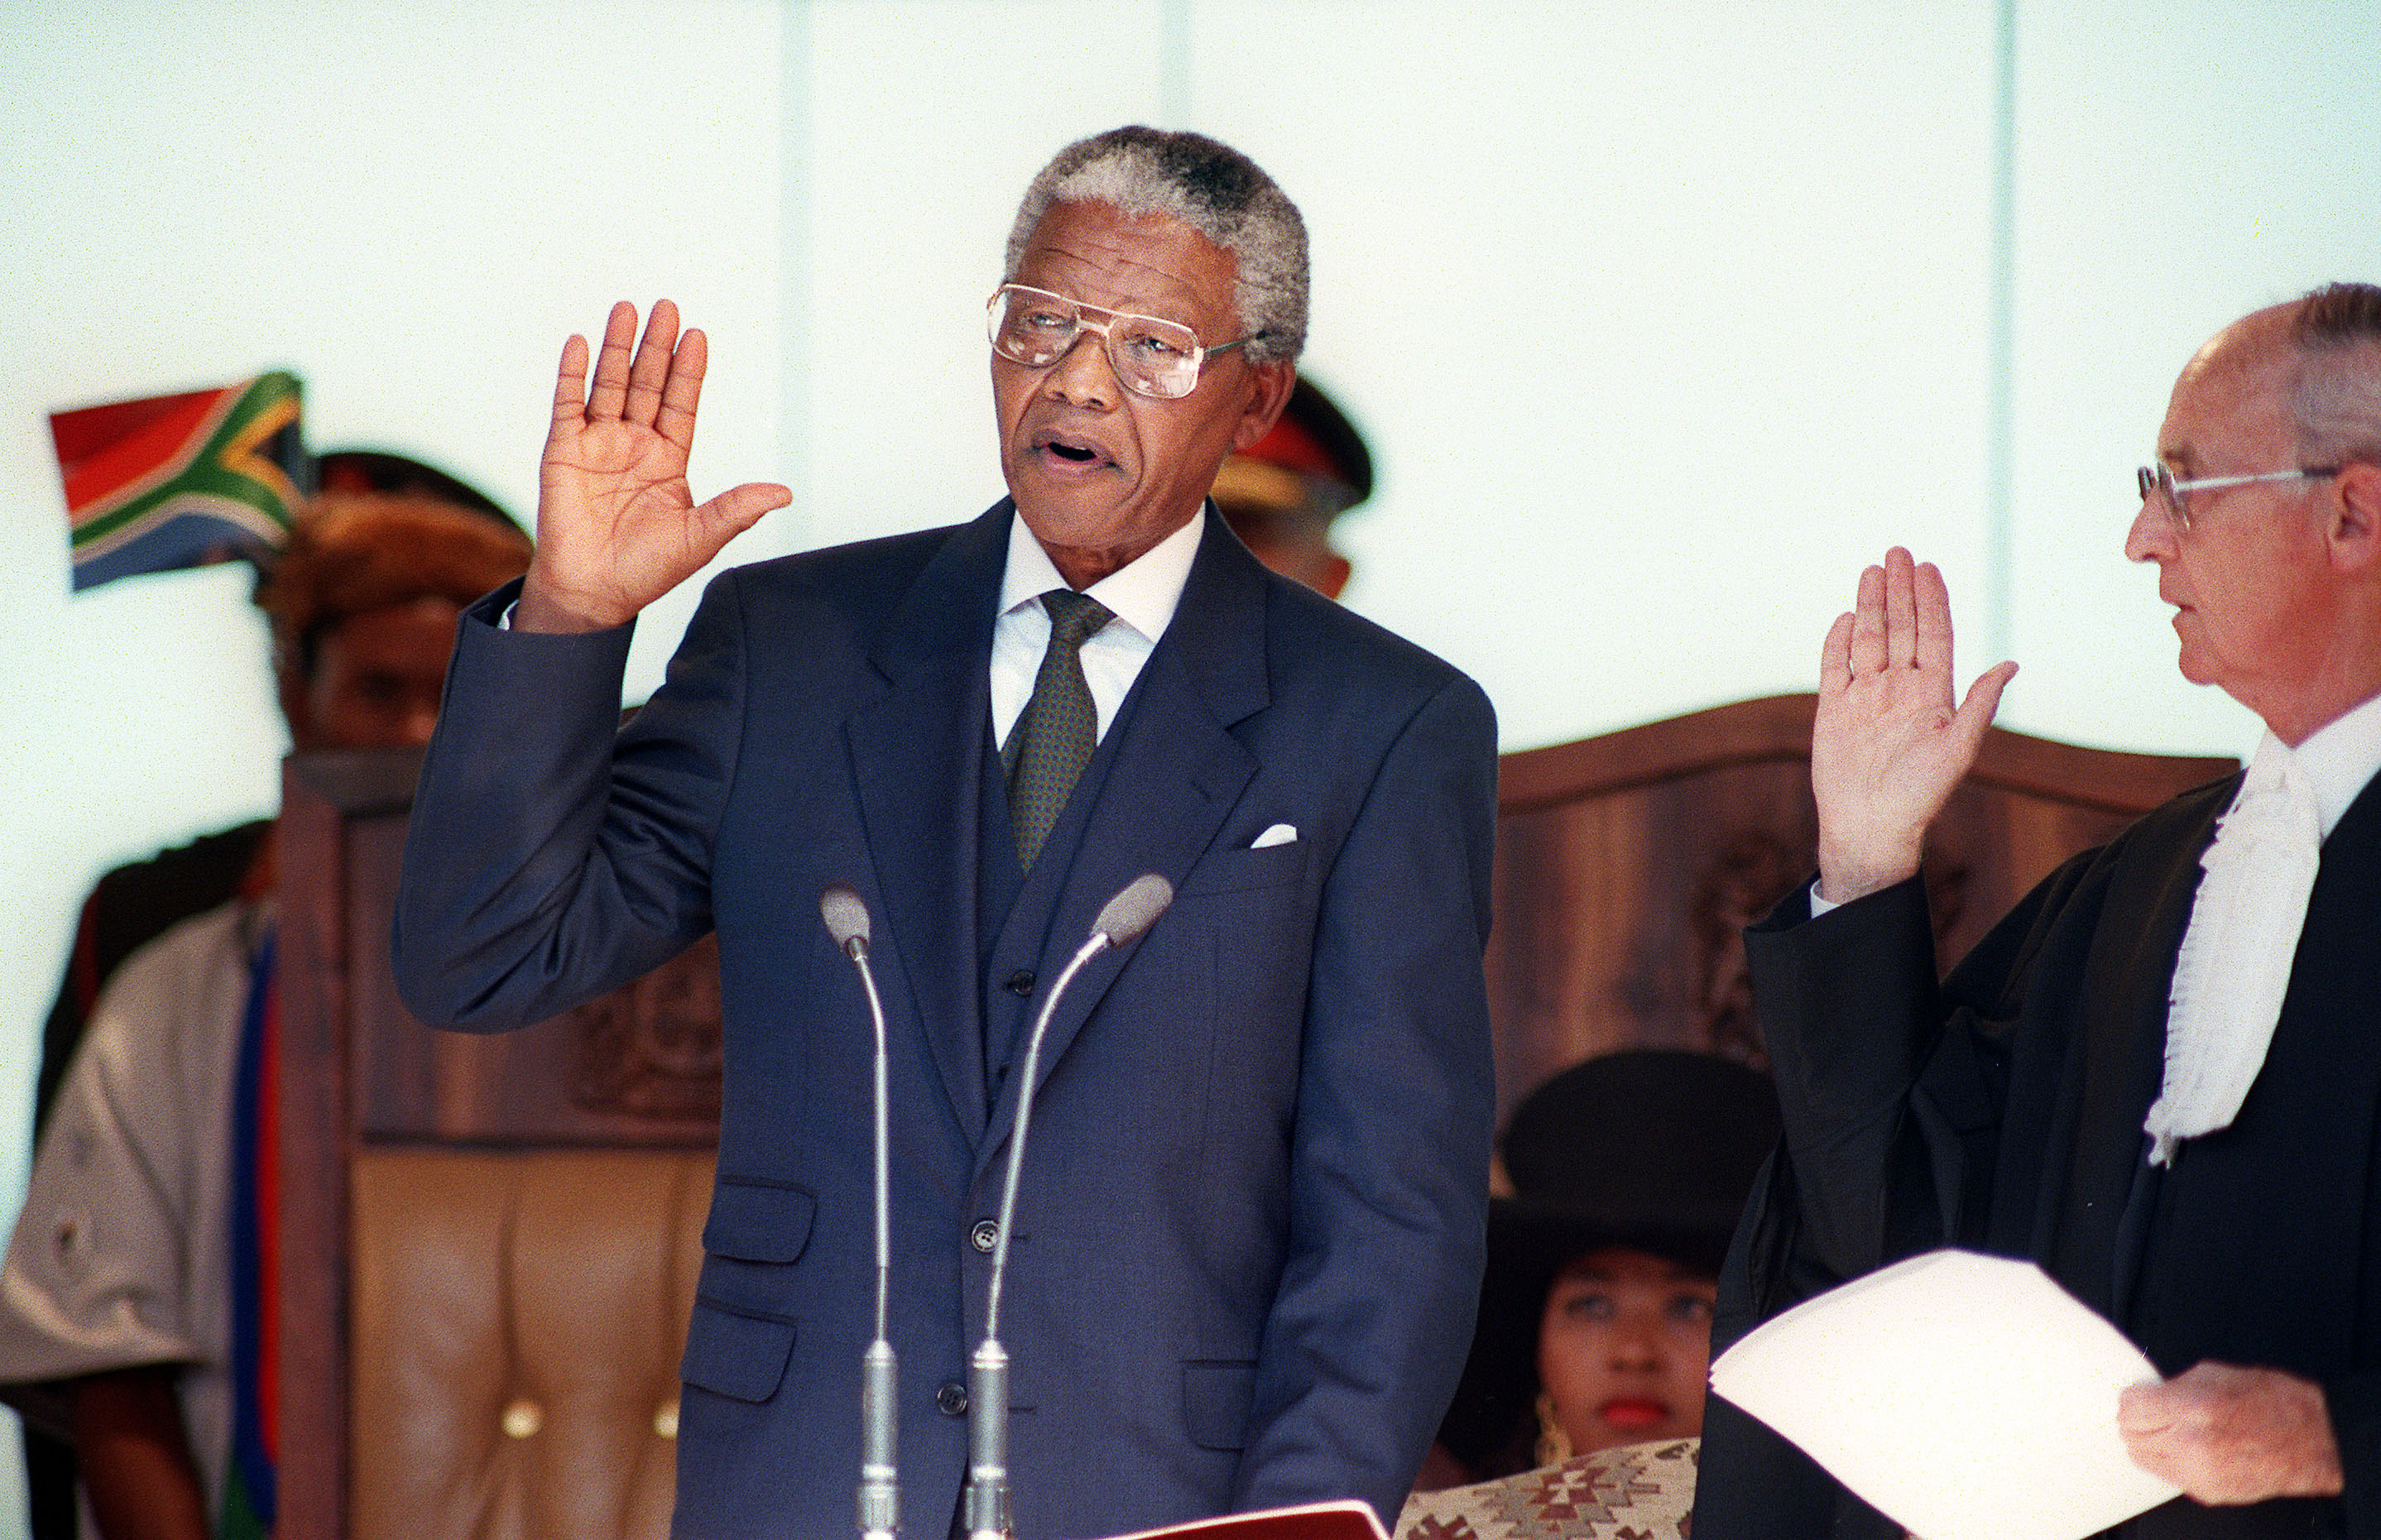 the speech of nelson mandela in 1994